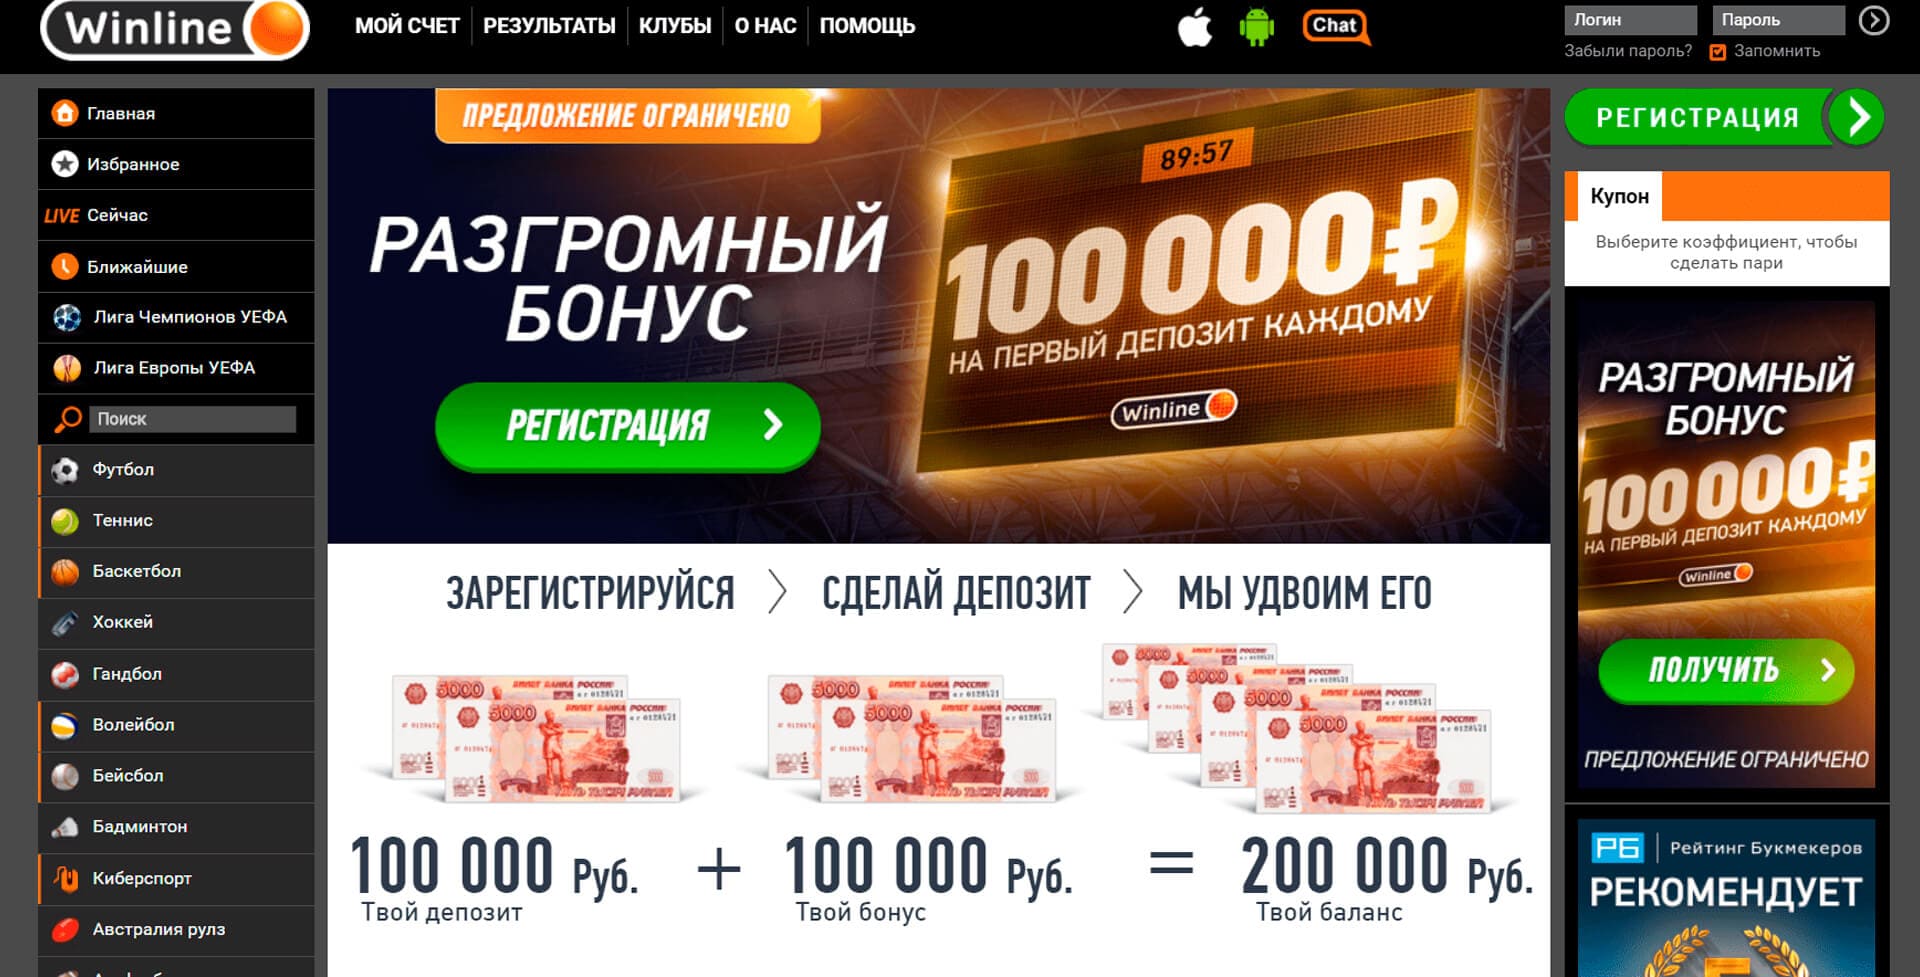 Где можно рекламировать букмекерские конторы турция украина букмекеры